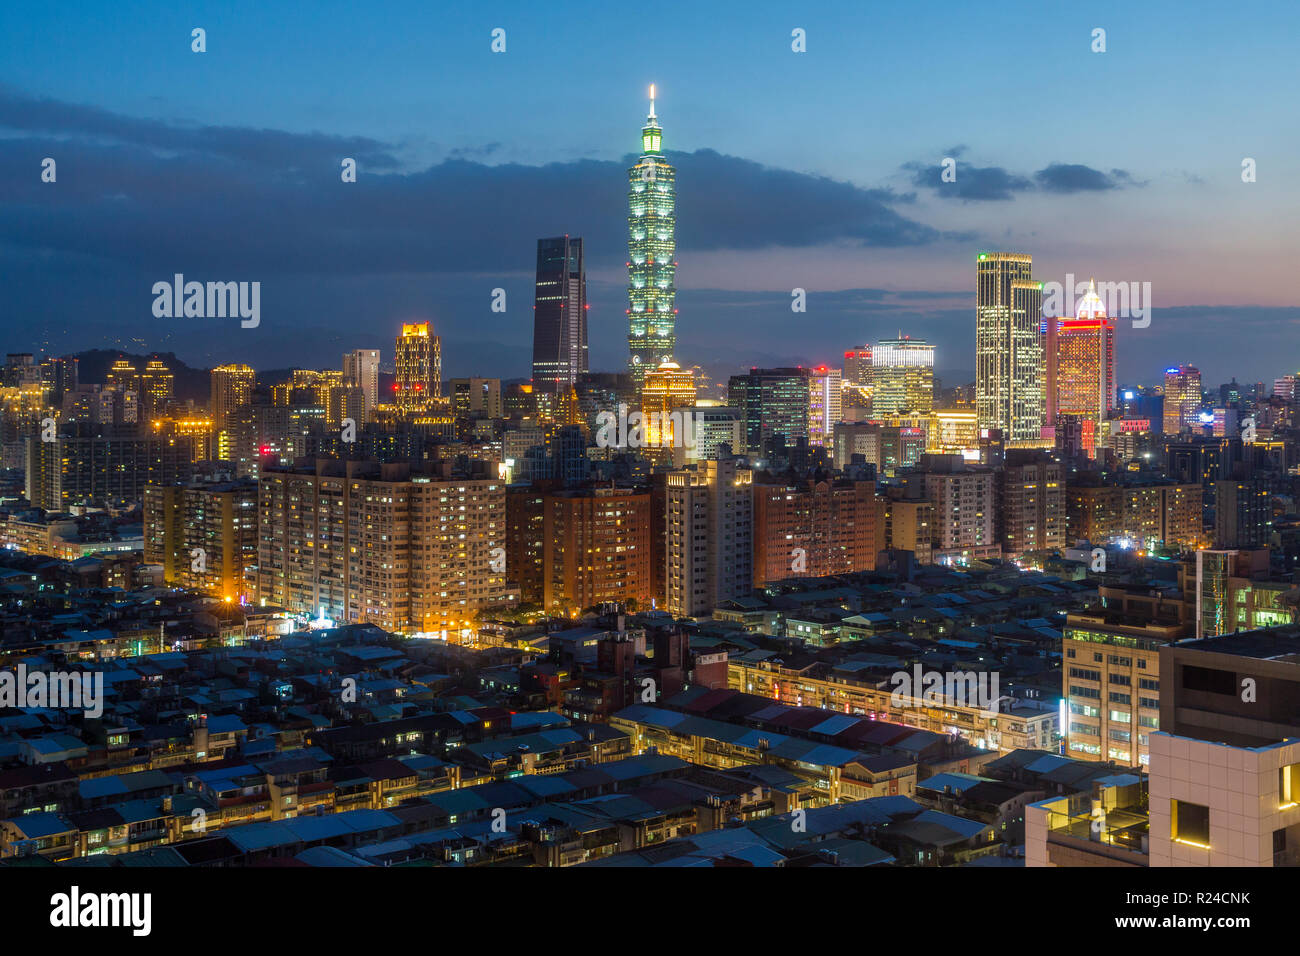 El horizonte de la ciudad y el edificio Taipei 101, Taipei, Taiwán, Asia Foto de stock